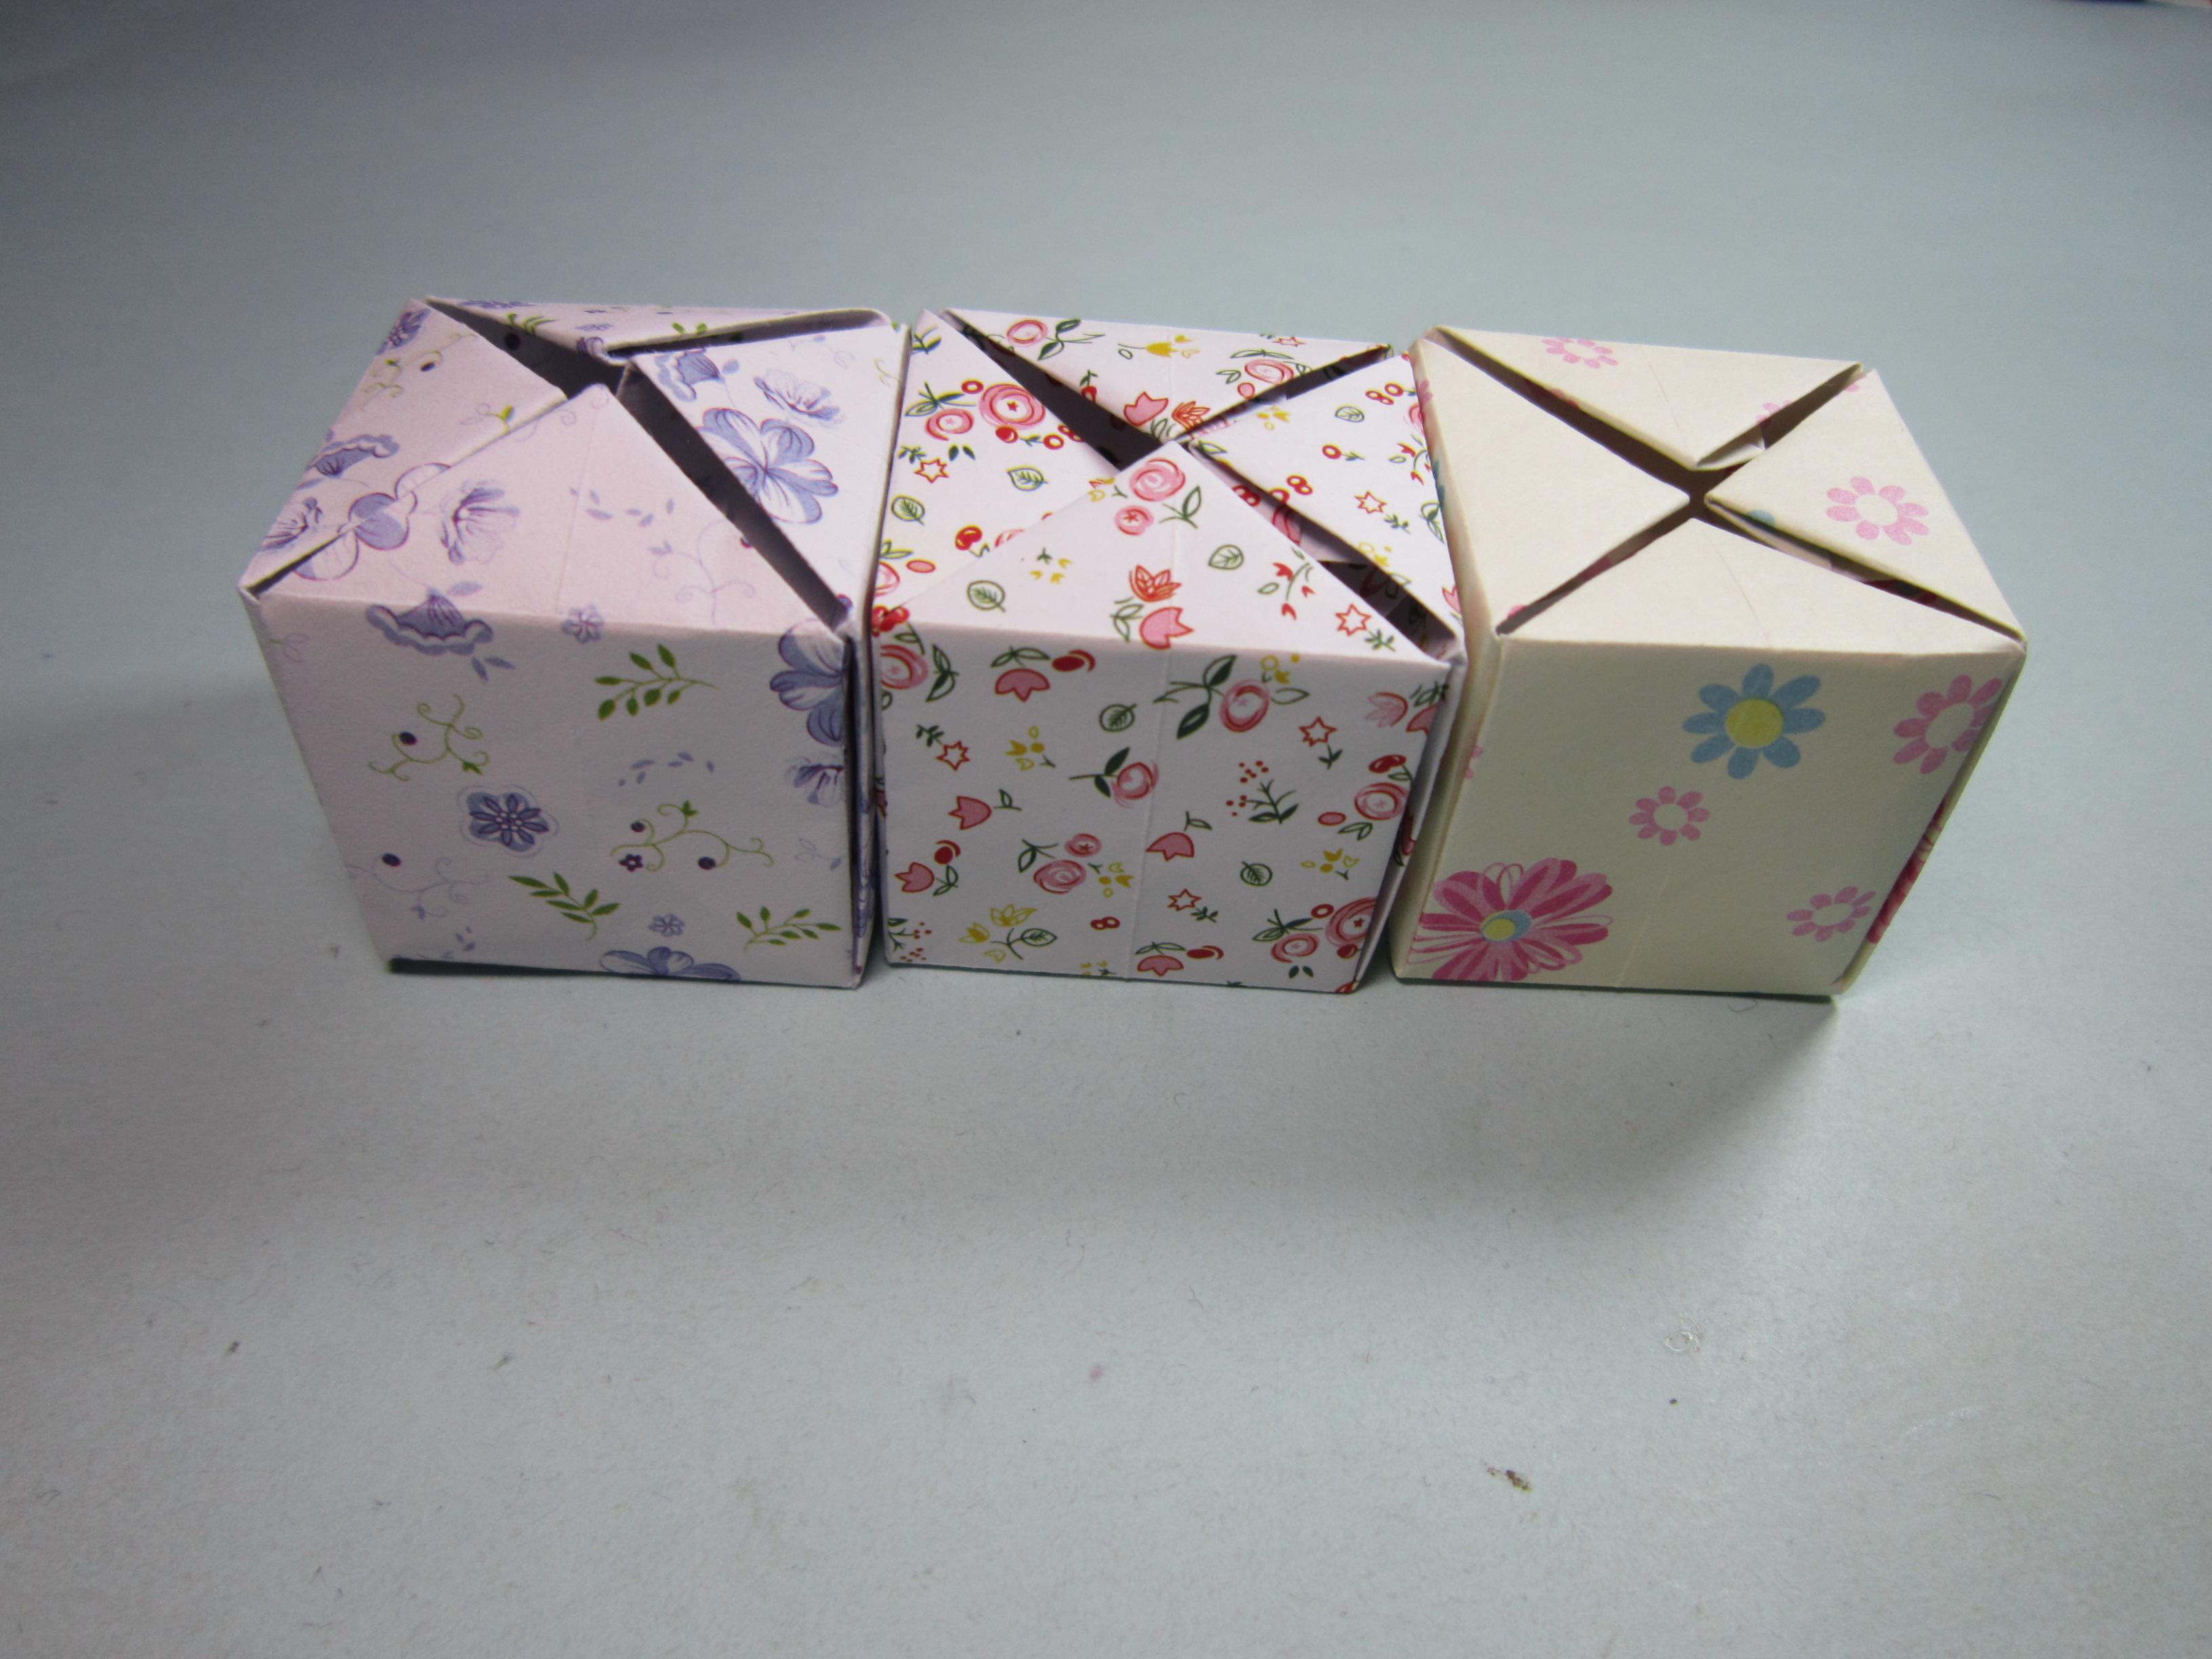 纸艺手工折纸礼品盒子,一张纸就能折出简单又漂亮的礼品收纳盒